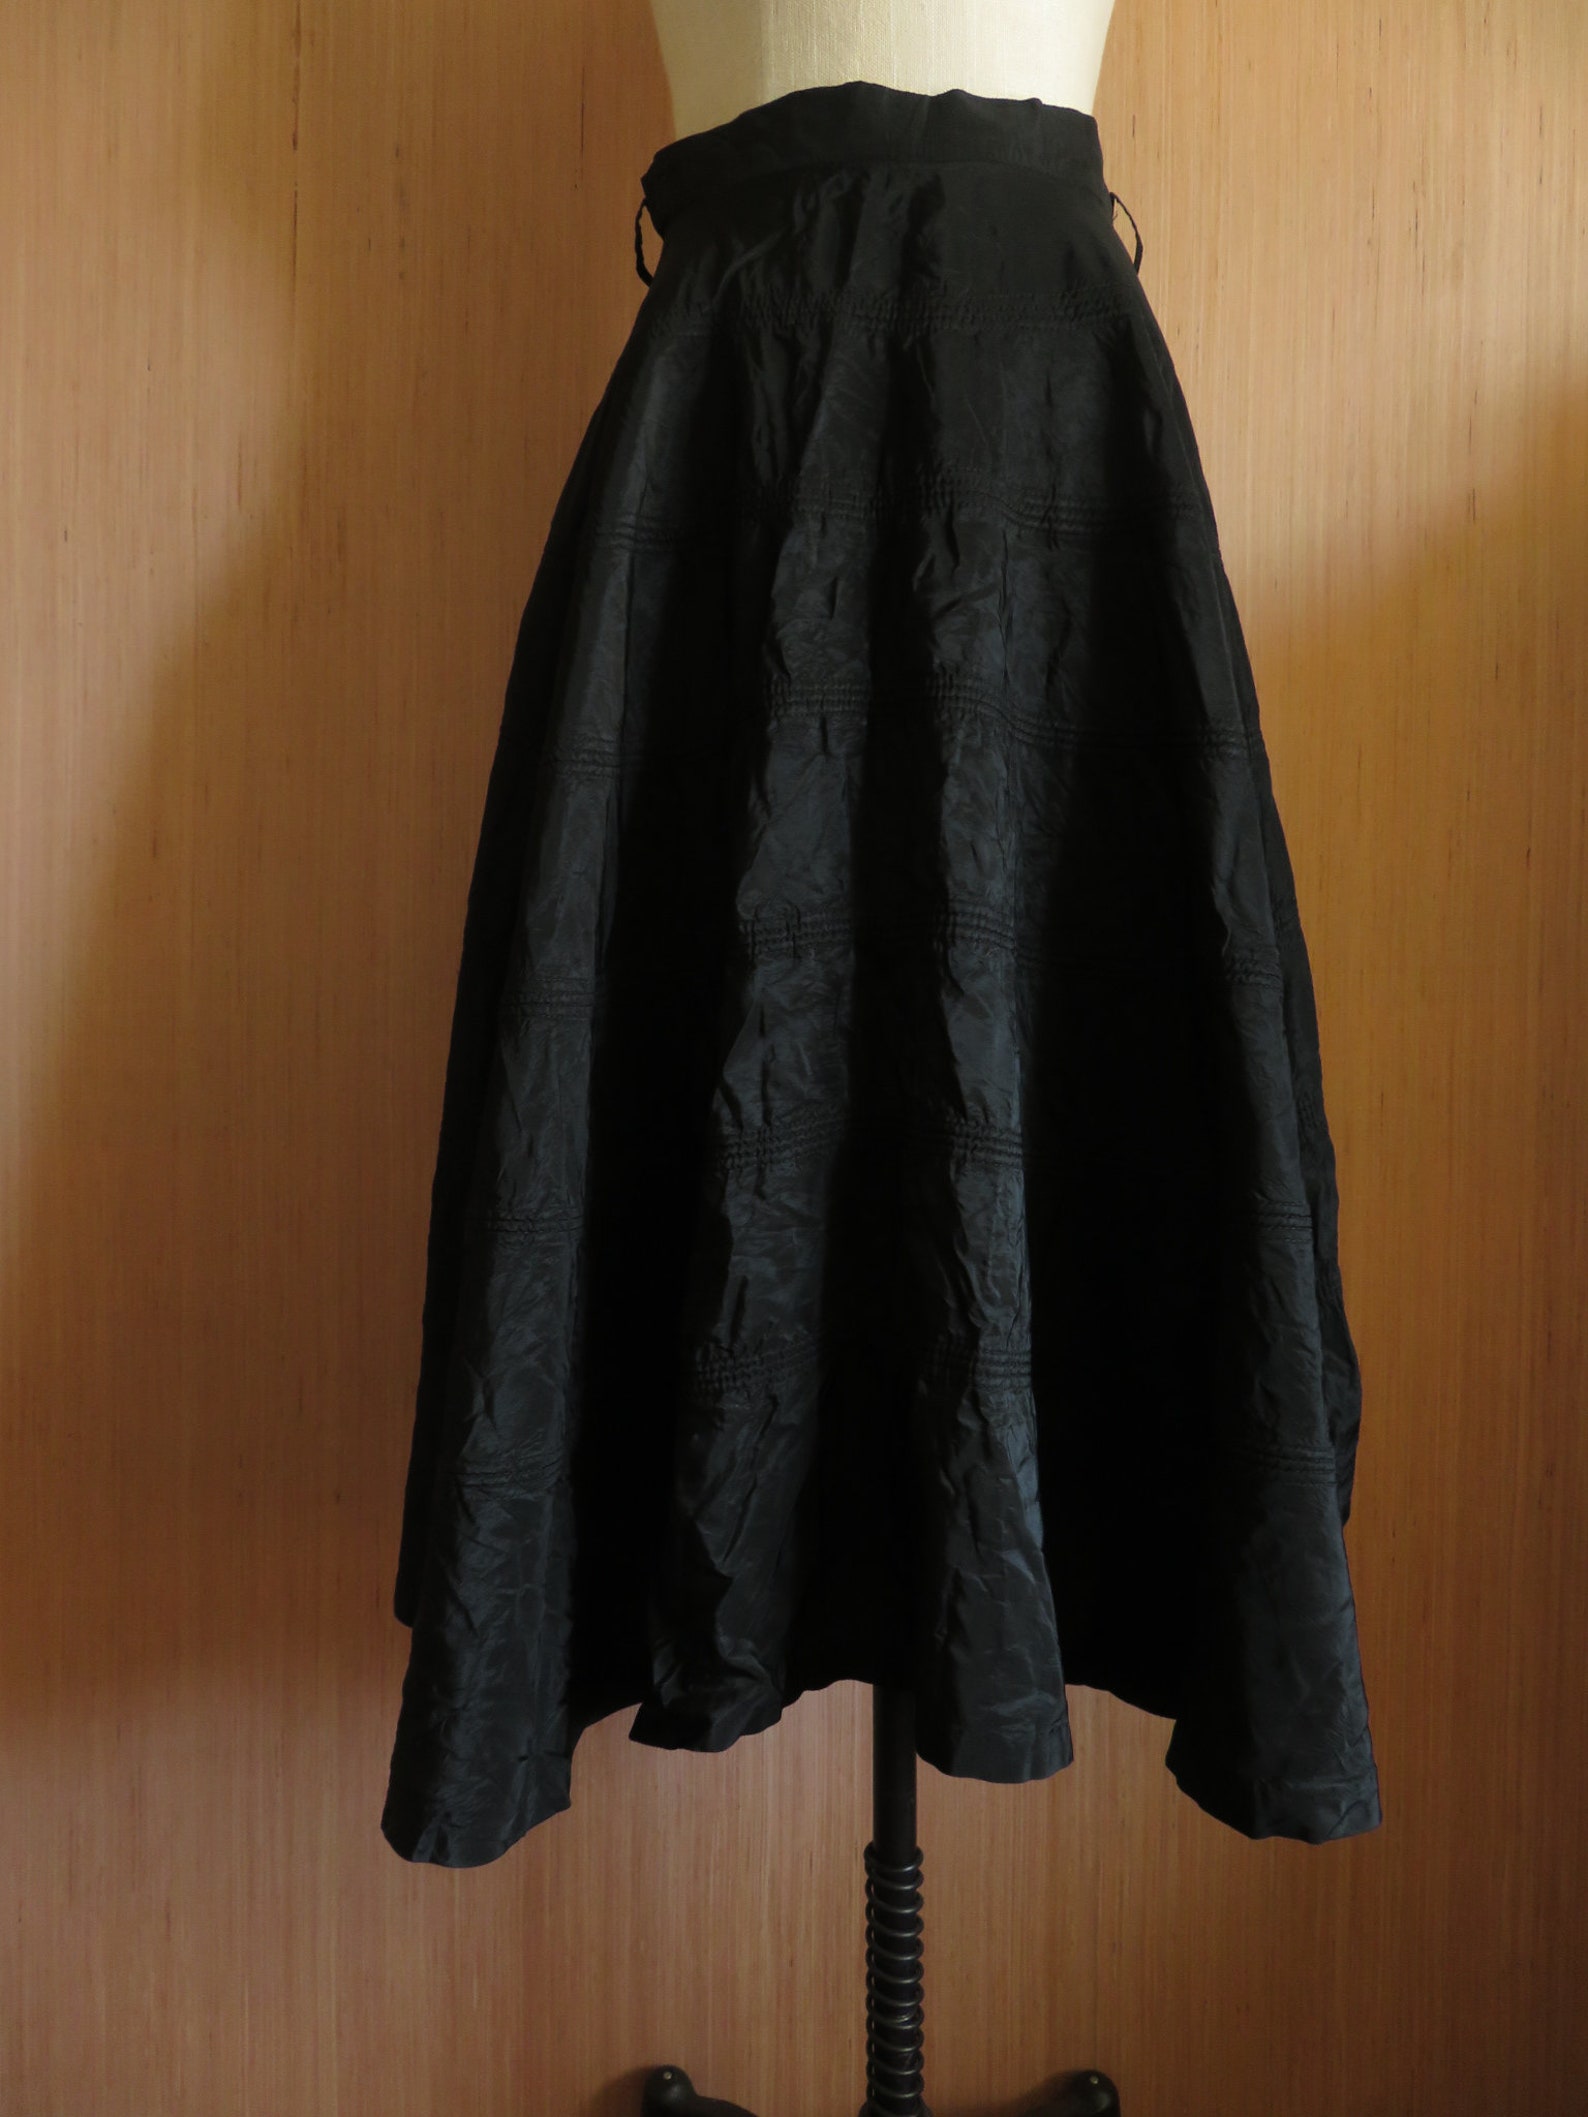 40s Black Silk Taffeta Skirt Vintage Circle Skirt Swing Skirt - Etsy